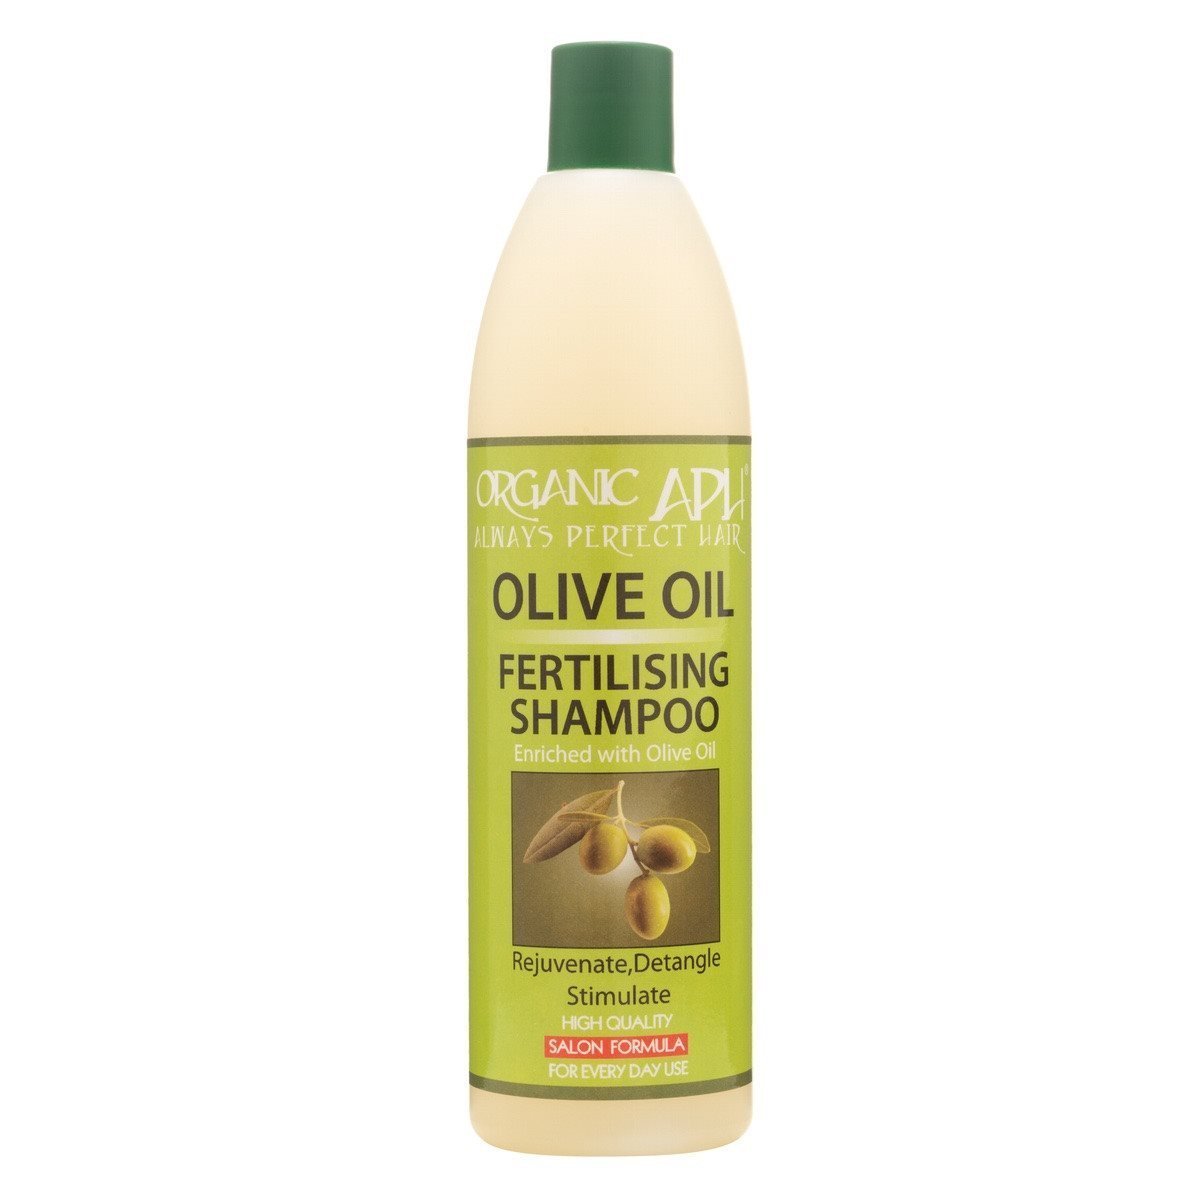 Hair Fertilising Shampoo - Deep Nourishment & Hydration for Healthy, Smooth Hair | 500ml - beautyhair.co.ukShampoo